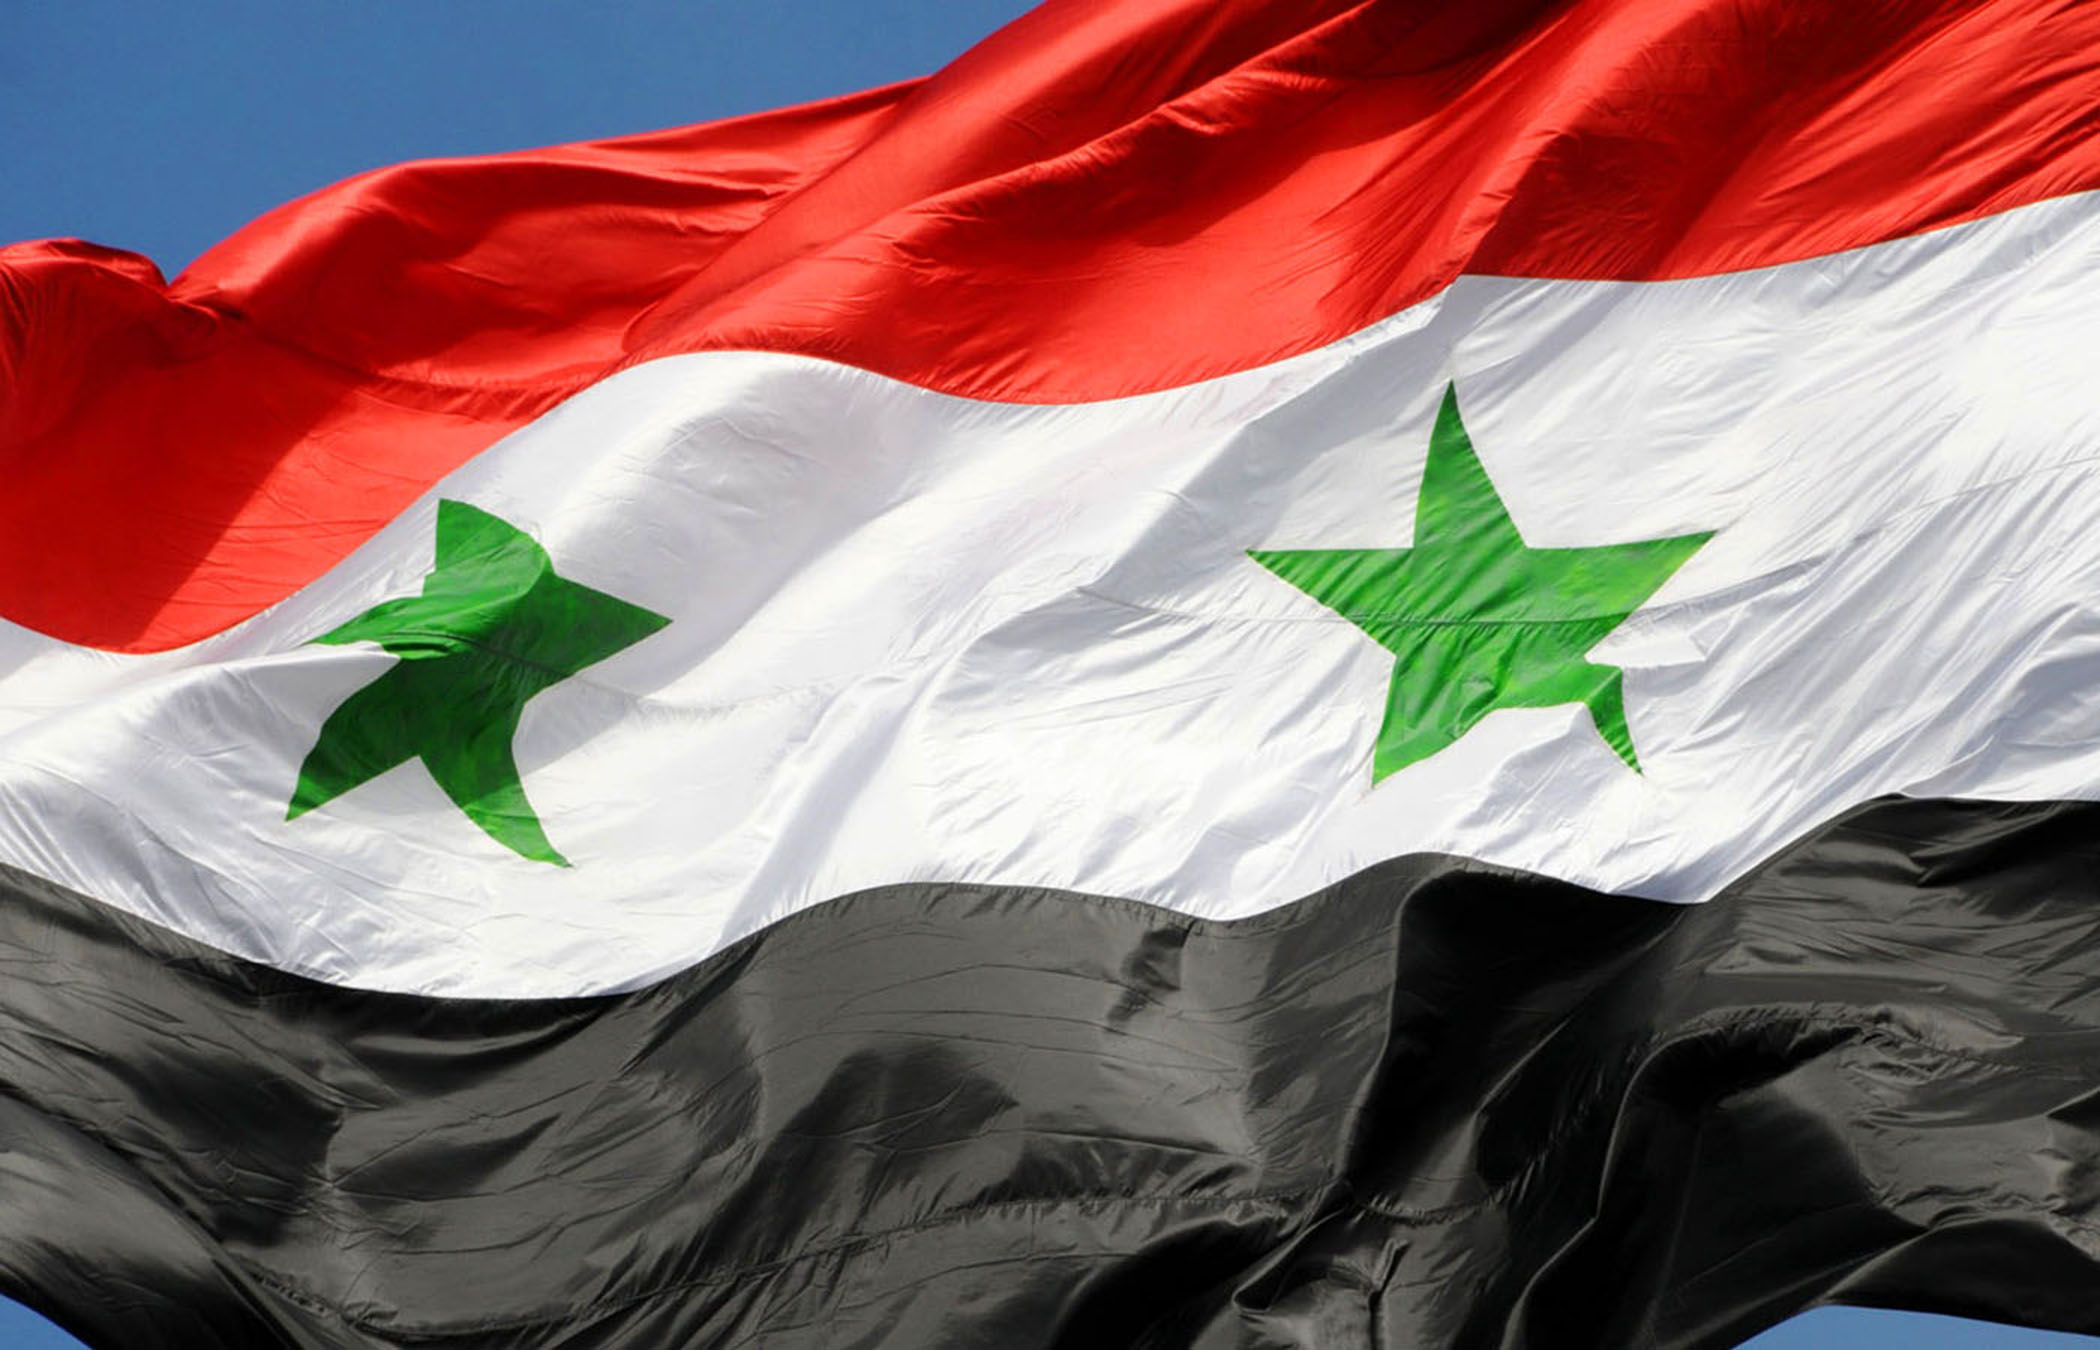 ما معنى ألوان علم سوريا ؟ - موقع المصطبة